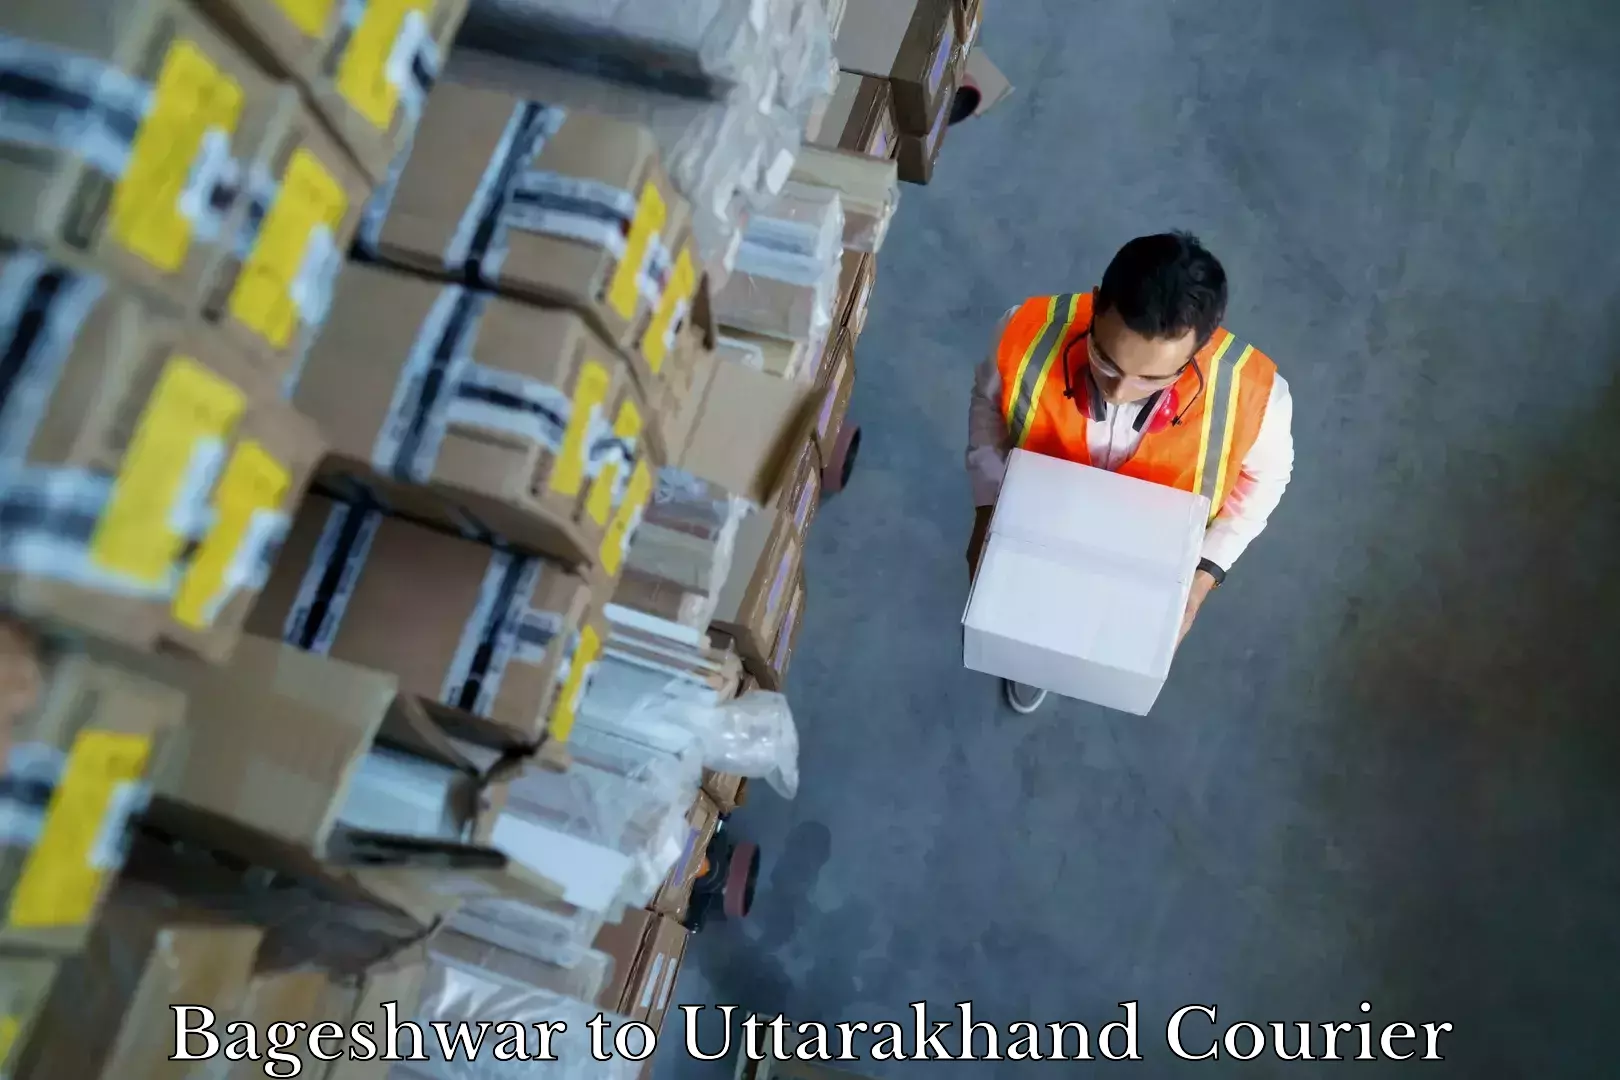 Furniture moving experts Bageshwar to Uttarakhand